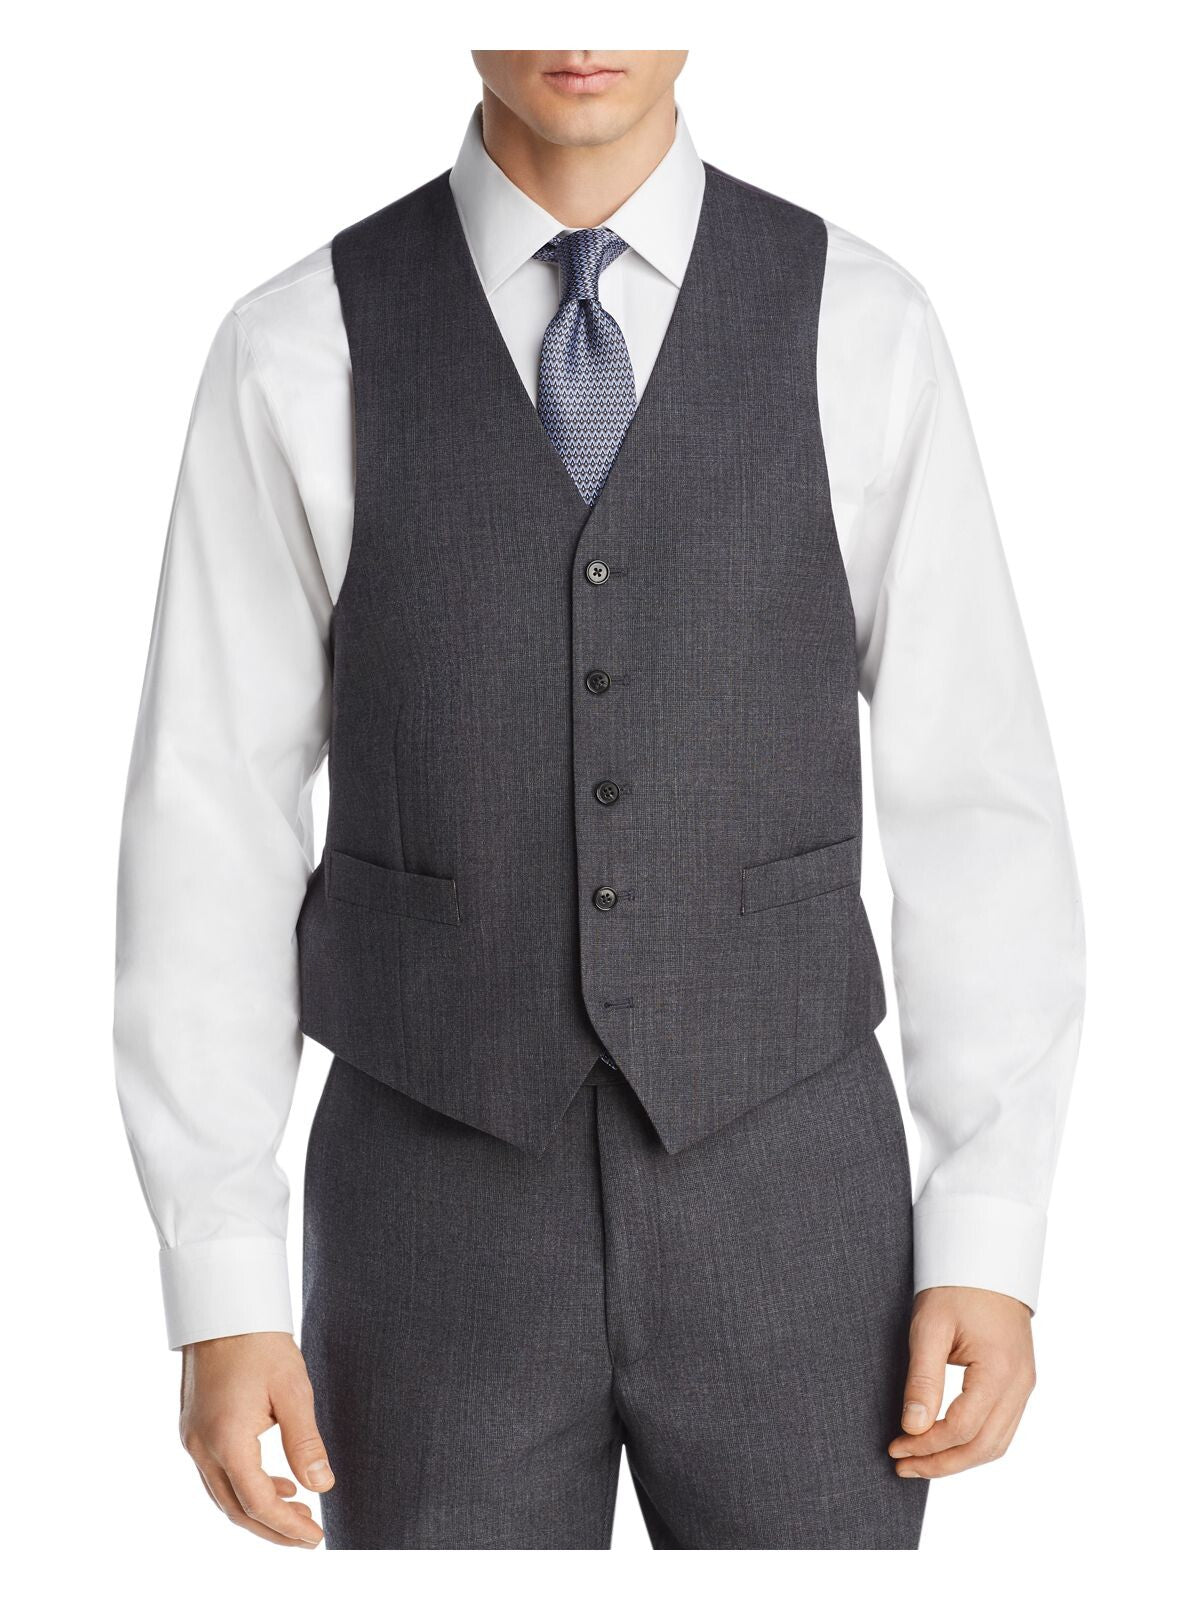 MICHAEL KORS Mens Gray Classic Fit Suit Separate Blazer Jacket 46R